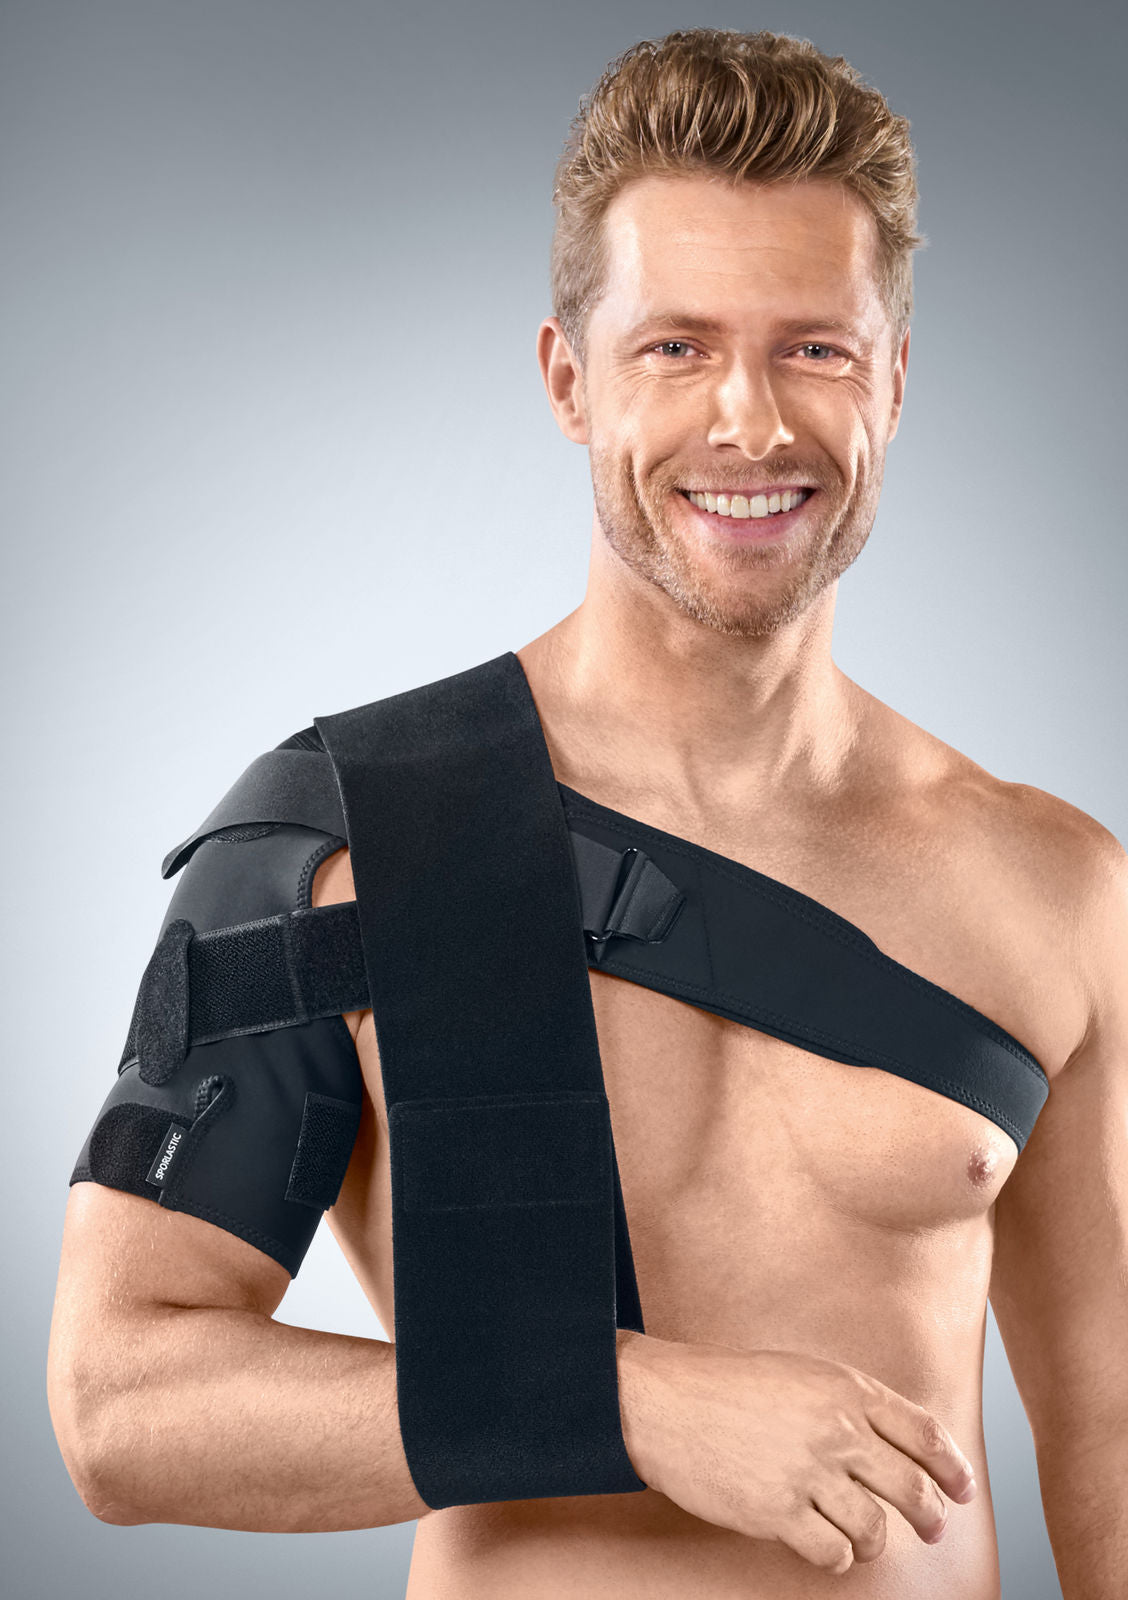 shoulder bandage